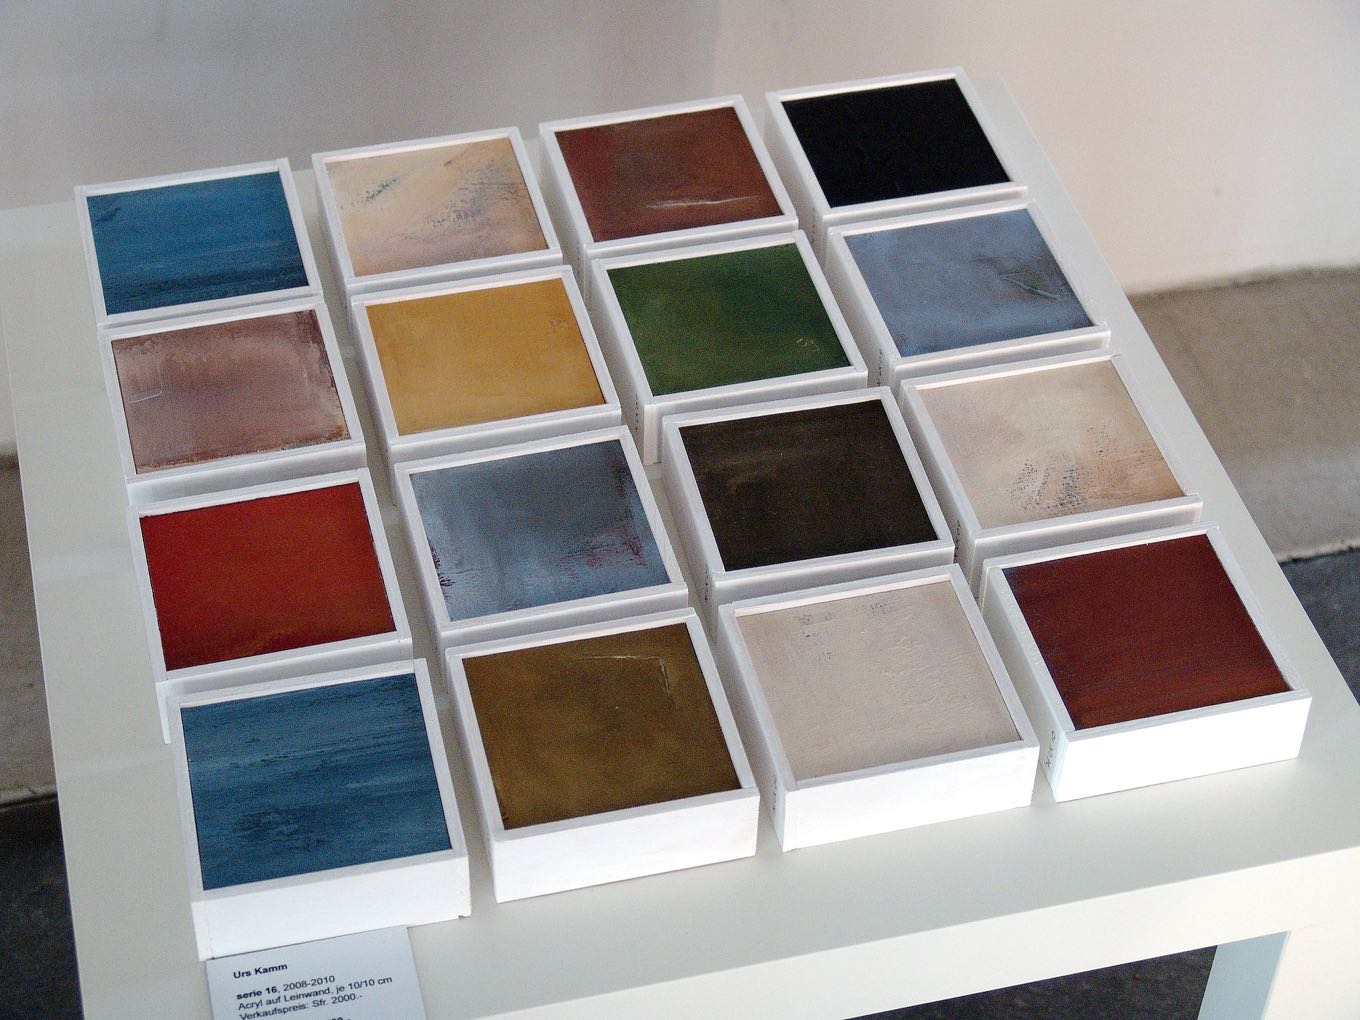 Urs Kamm: Serie 16, 2008–10, Acryl auf Leinwand, je 10 x 10cm